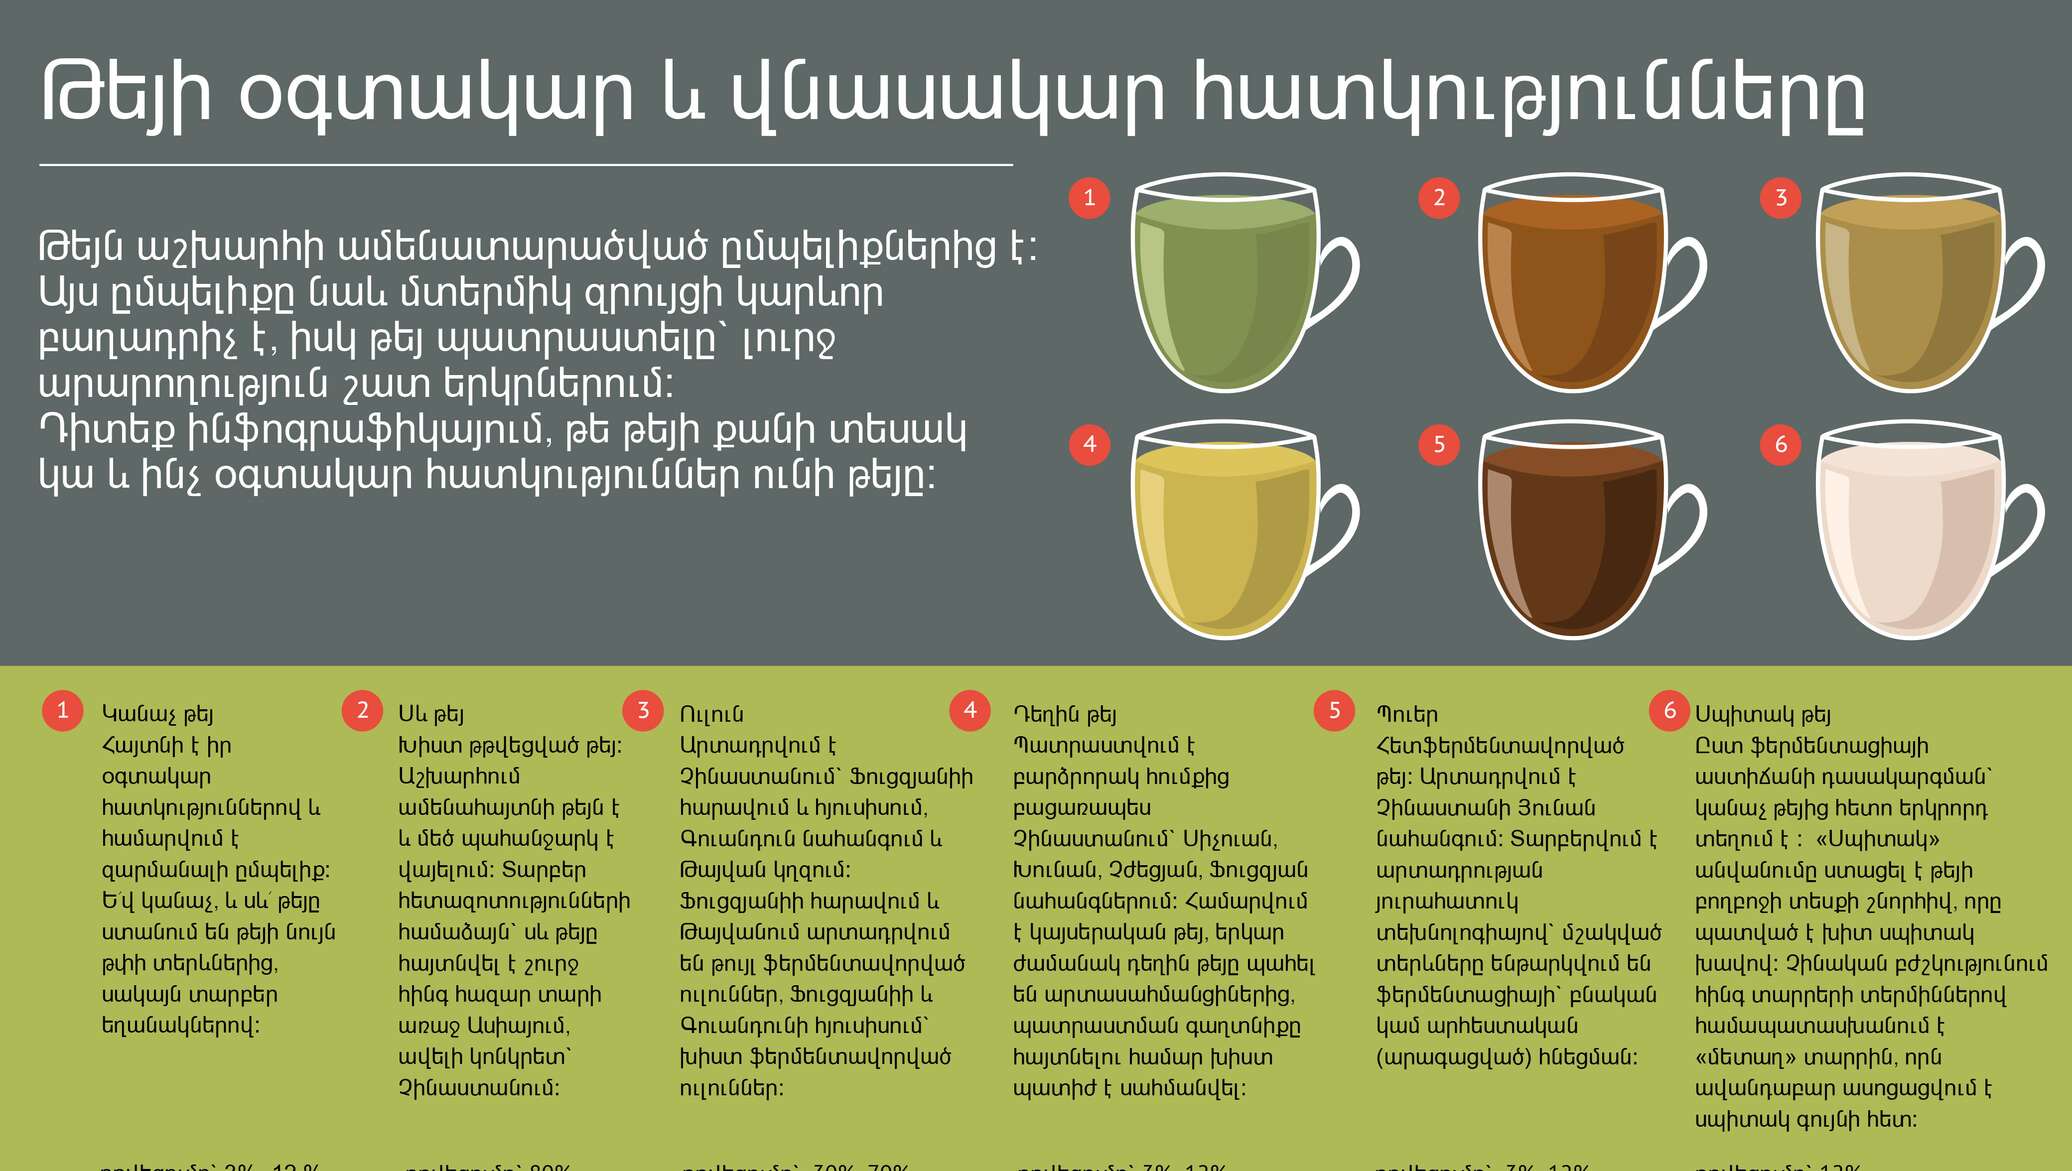 Пить раз в неделю это. Разновидности чая. Инфографика чай. Инфографика заварка чая. Виды заваривания чая.